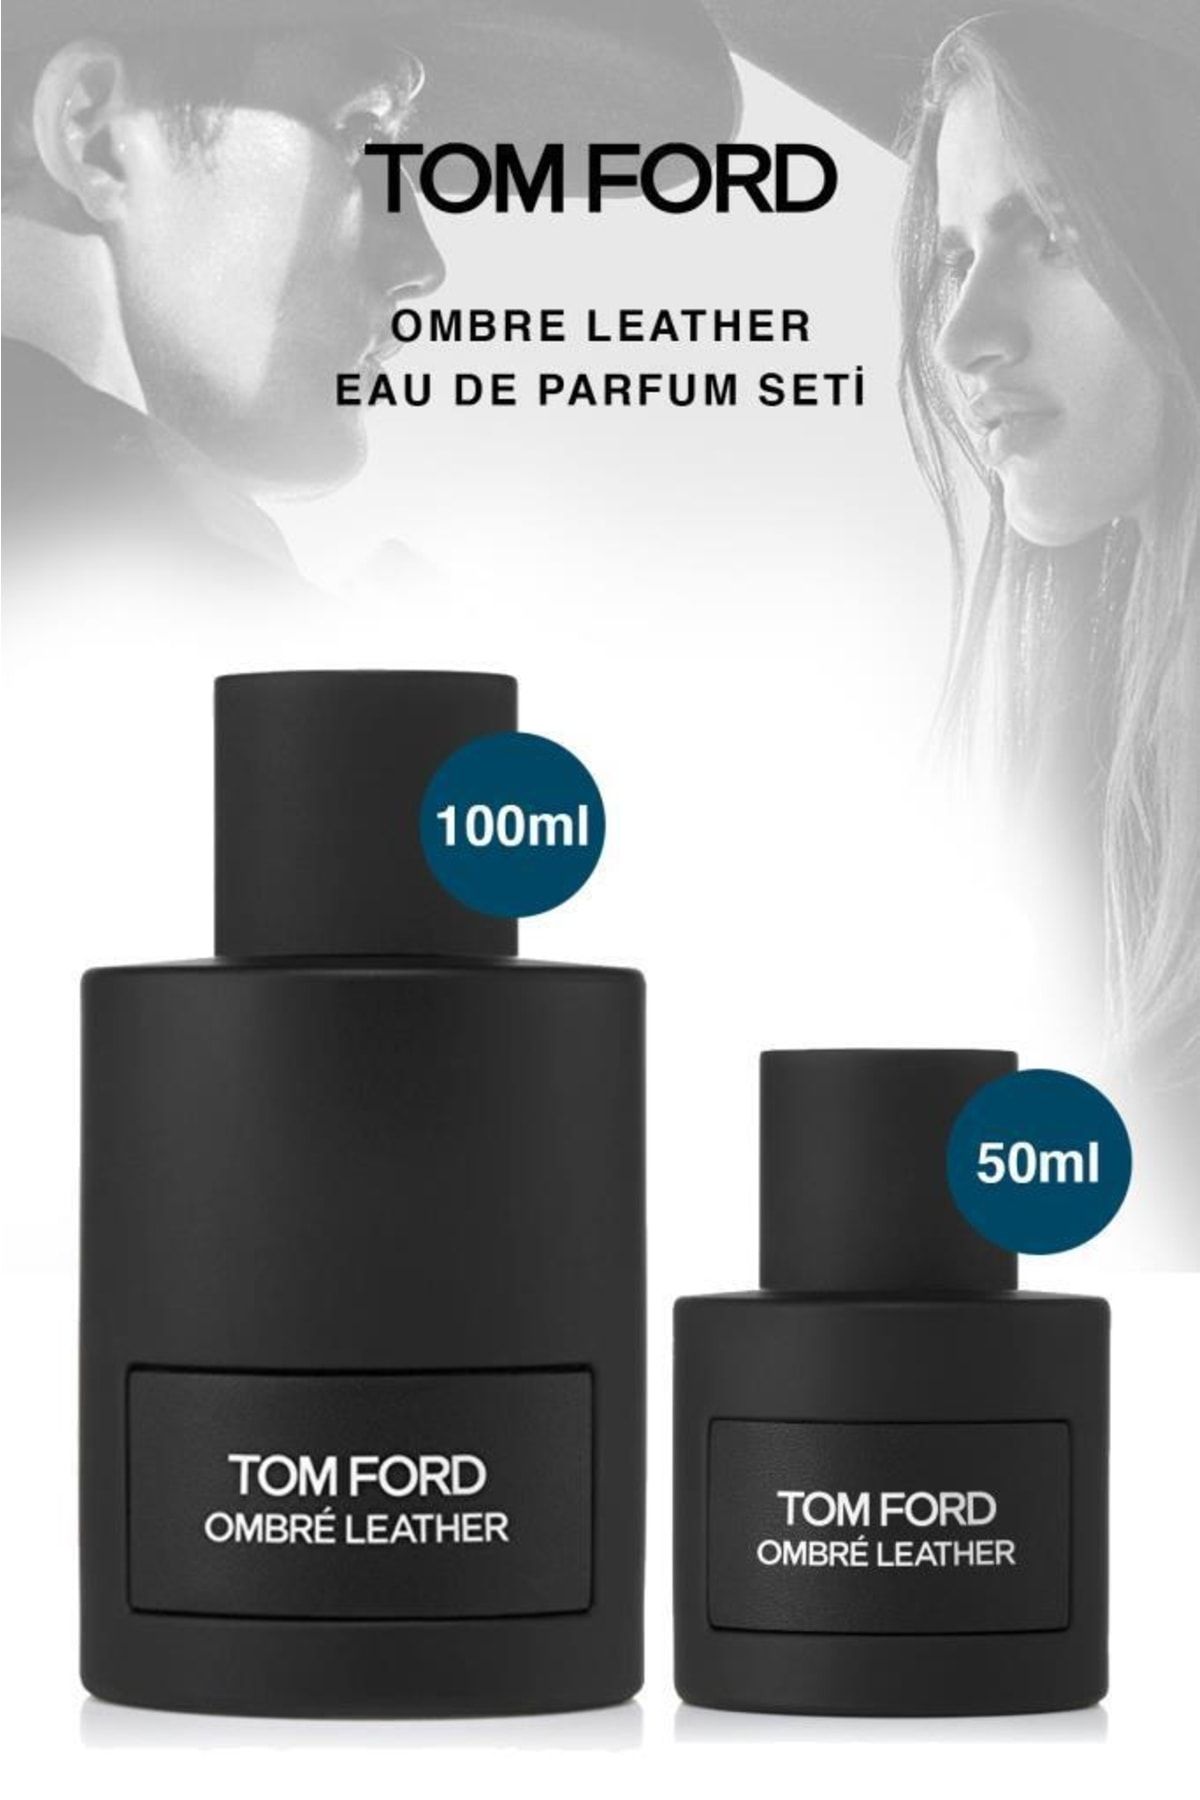 Tom Ford Ombre Leather Modern Baştan Çıkarıcı Erkek Parfüm Seti 100 Ve 50 Ml Set